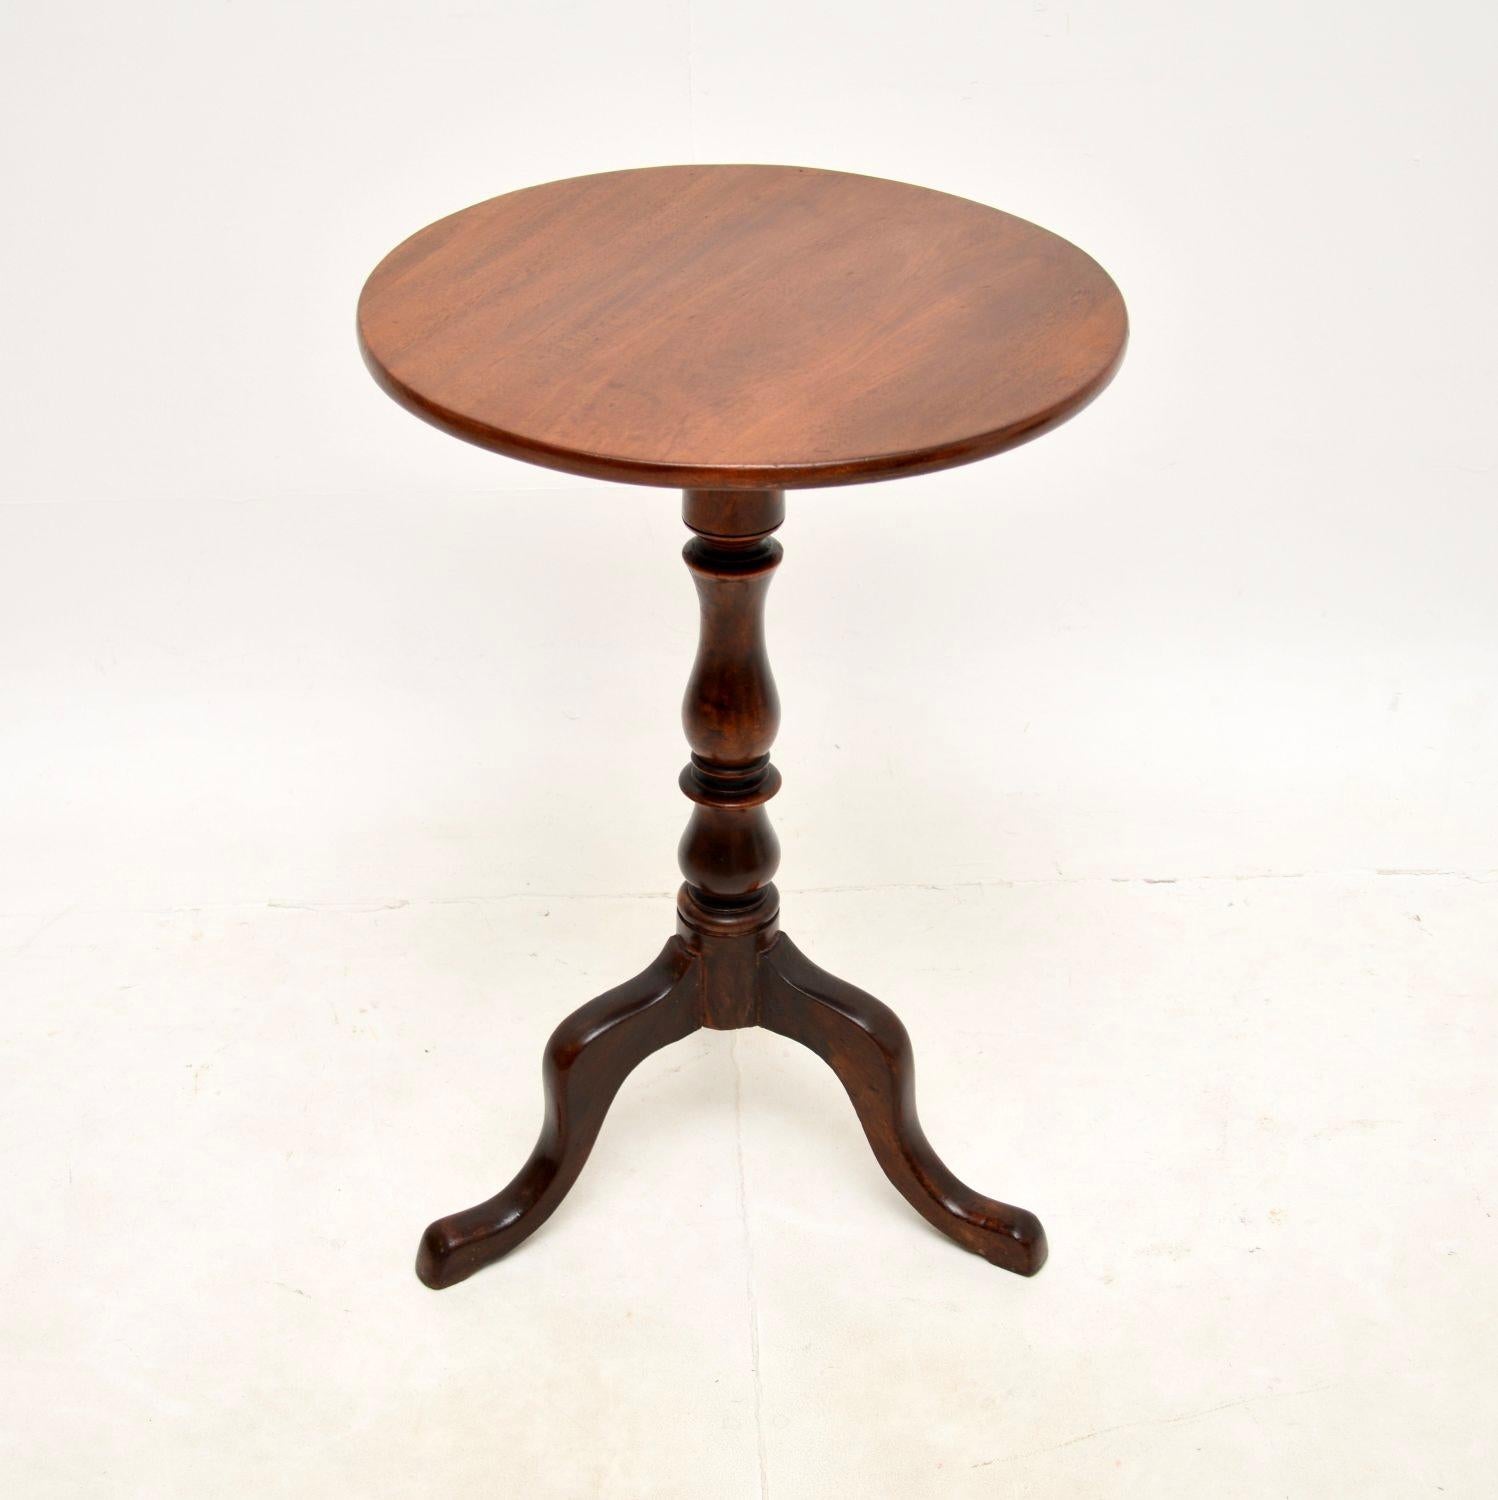 Magnifique table d'appoint à plateau basculant de style géorgien. Fabriqué en Angleterre, il date de la période 1790-1810.

La qualité est superbe, c'est très bien fait et c'est une taille utile. Le bois a une couleur magnifique et une belle patine